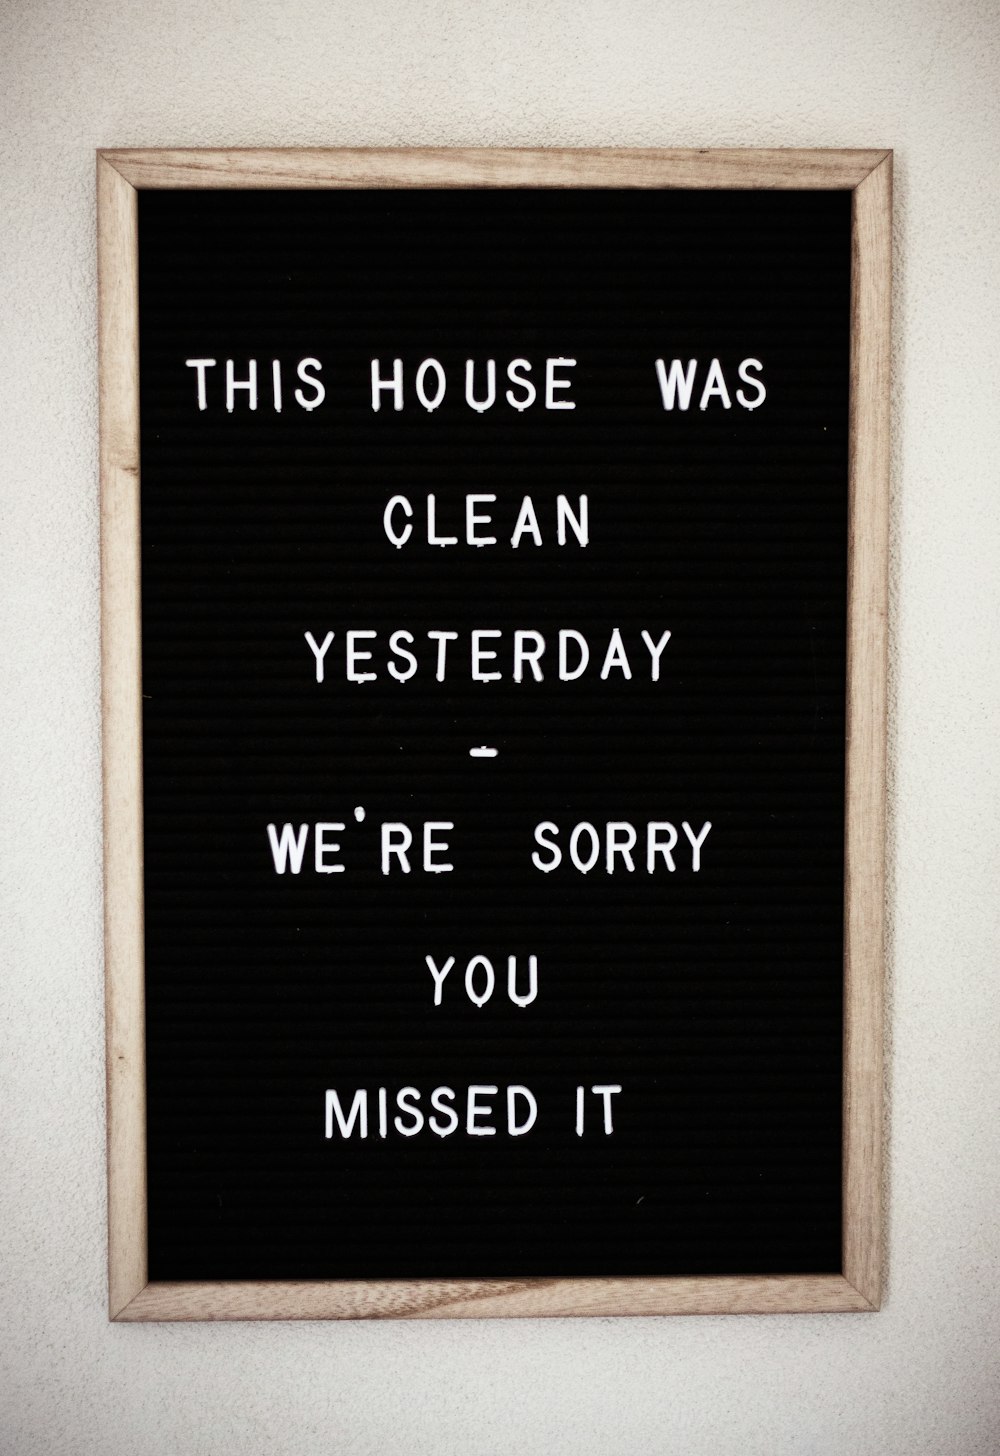 Questa casa era pulita ieri, ci dispiace che tu l'abbia persa